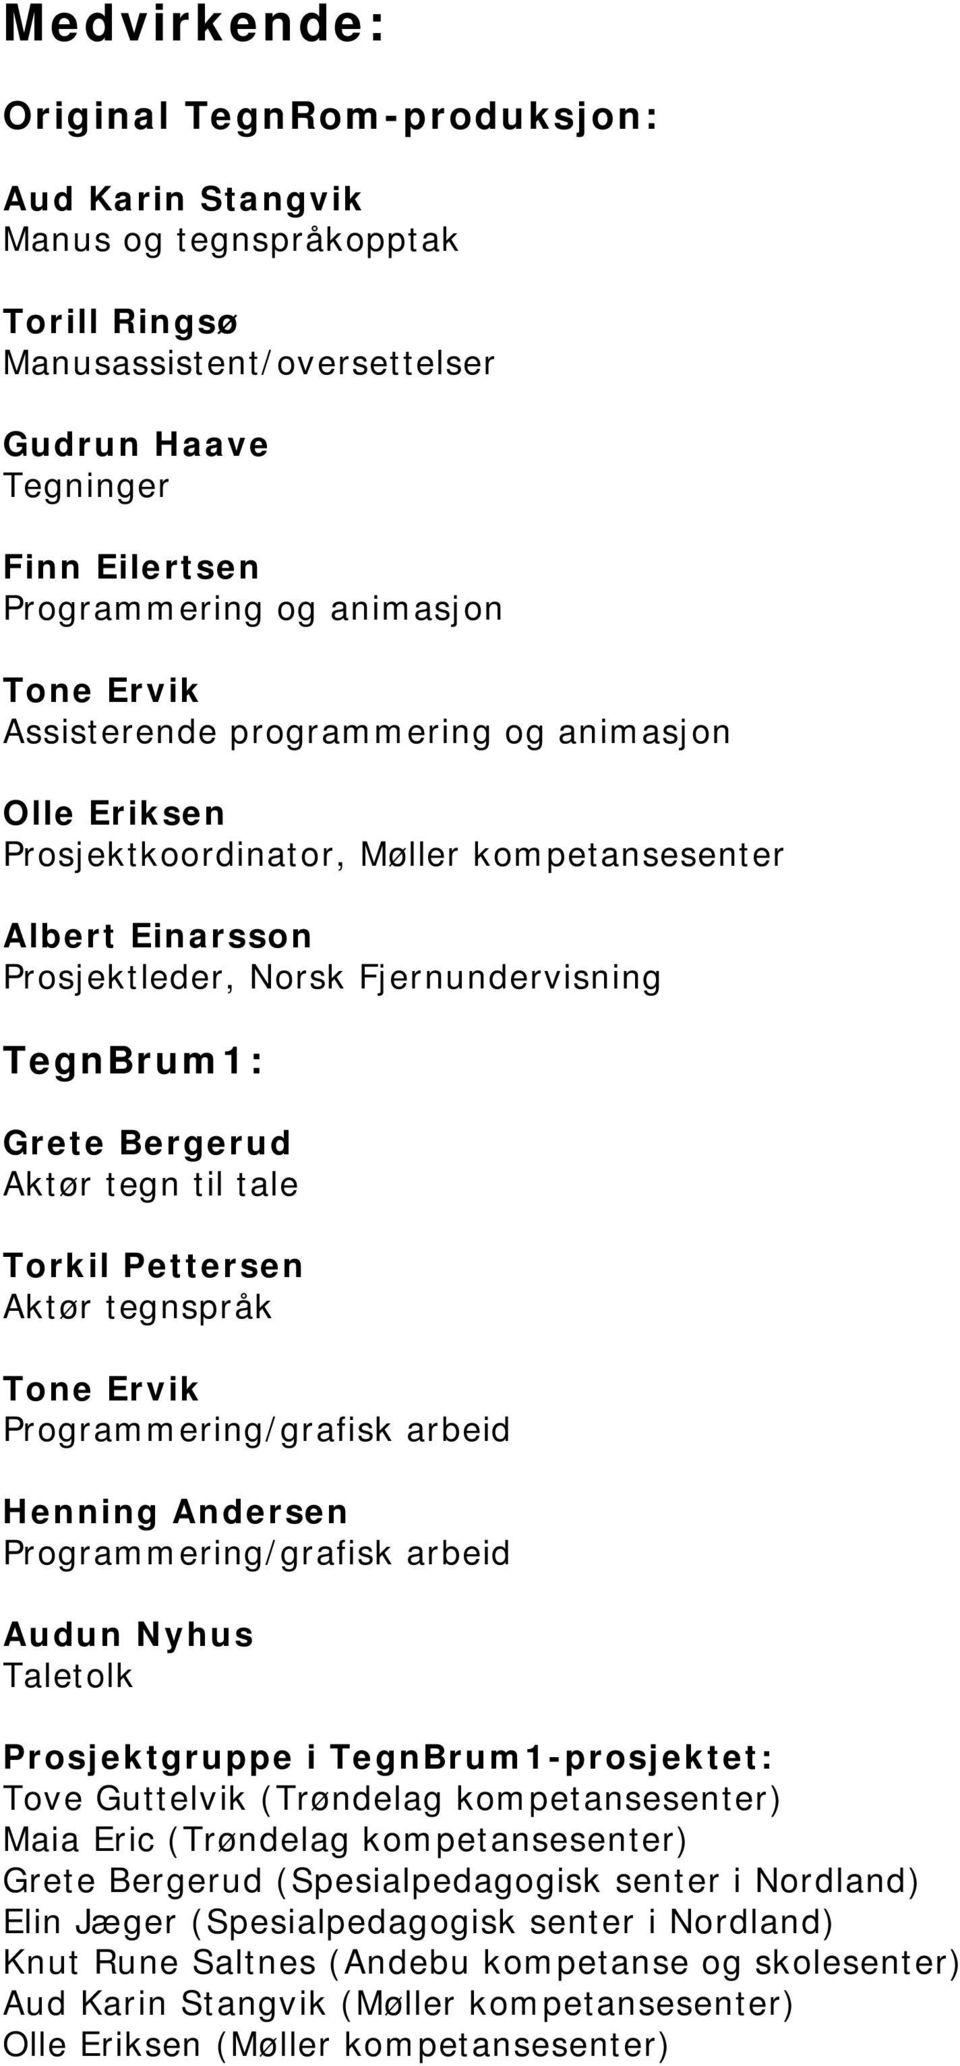 til tale Torkil Pettersen Aktør tegnspråk Tone Ervik Programmering/grafisk arbeid Henning Andersen Programmering/grafisk arbeid Audun Nyhus Taletolk Prosjektgruppe i TegnBrum1-prosjektet: Tove